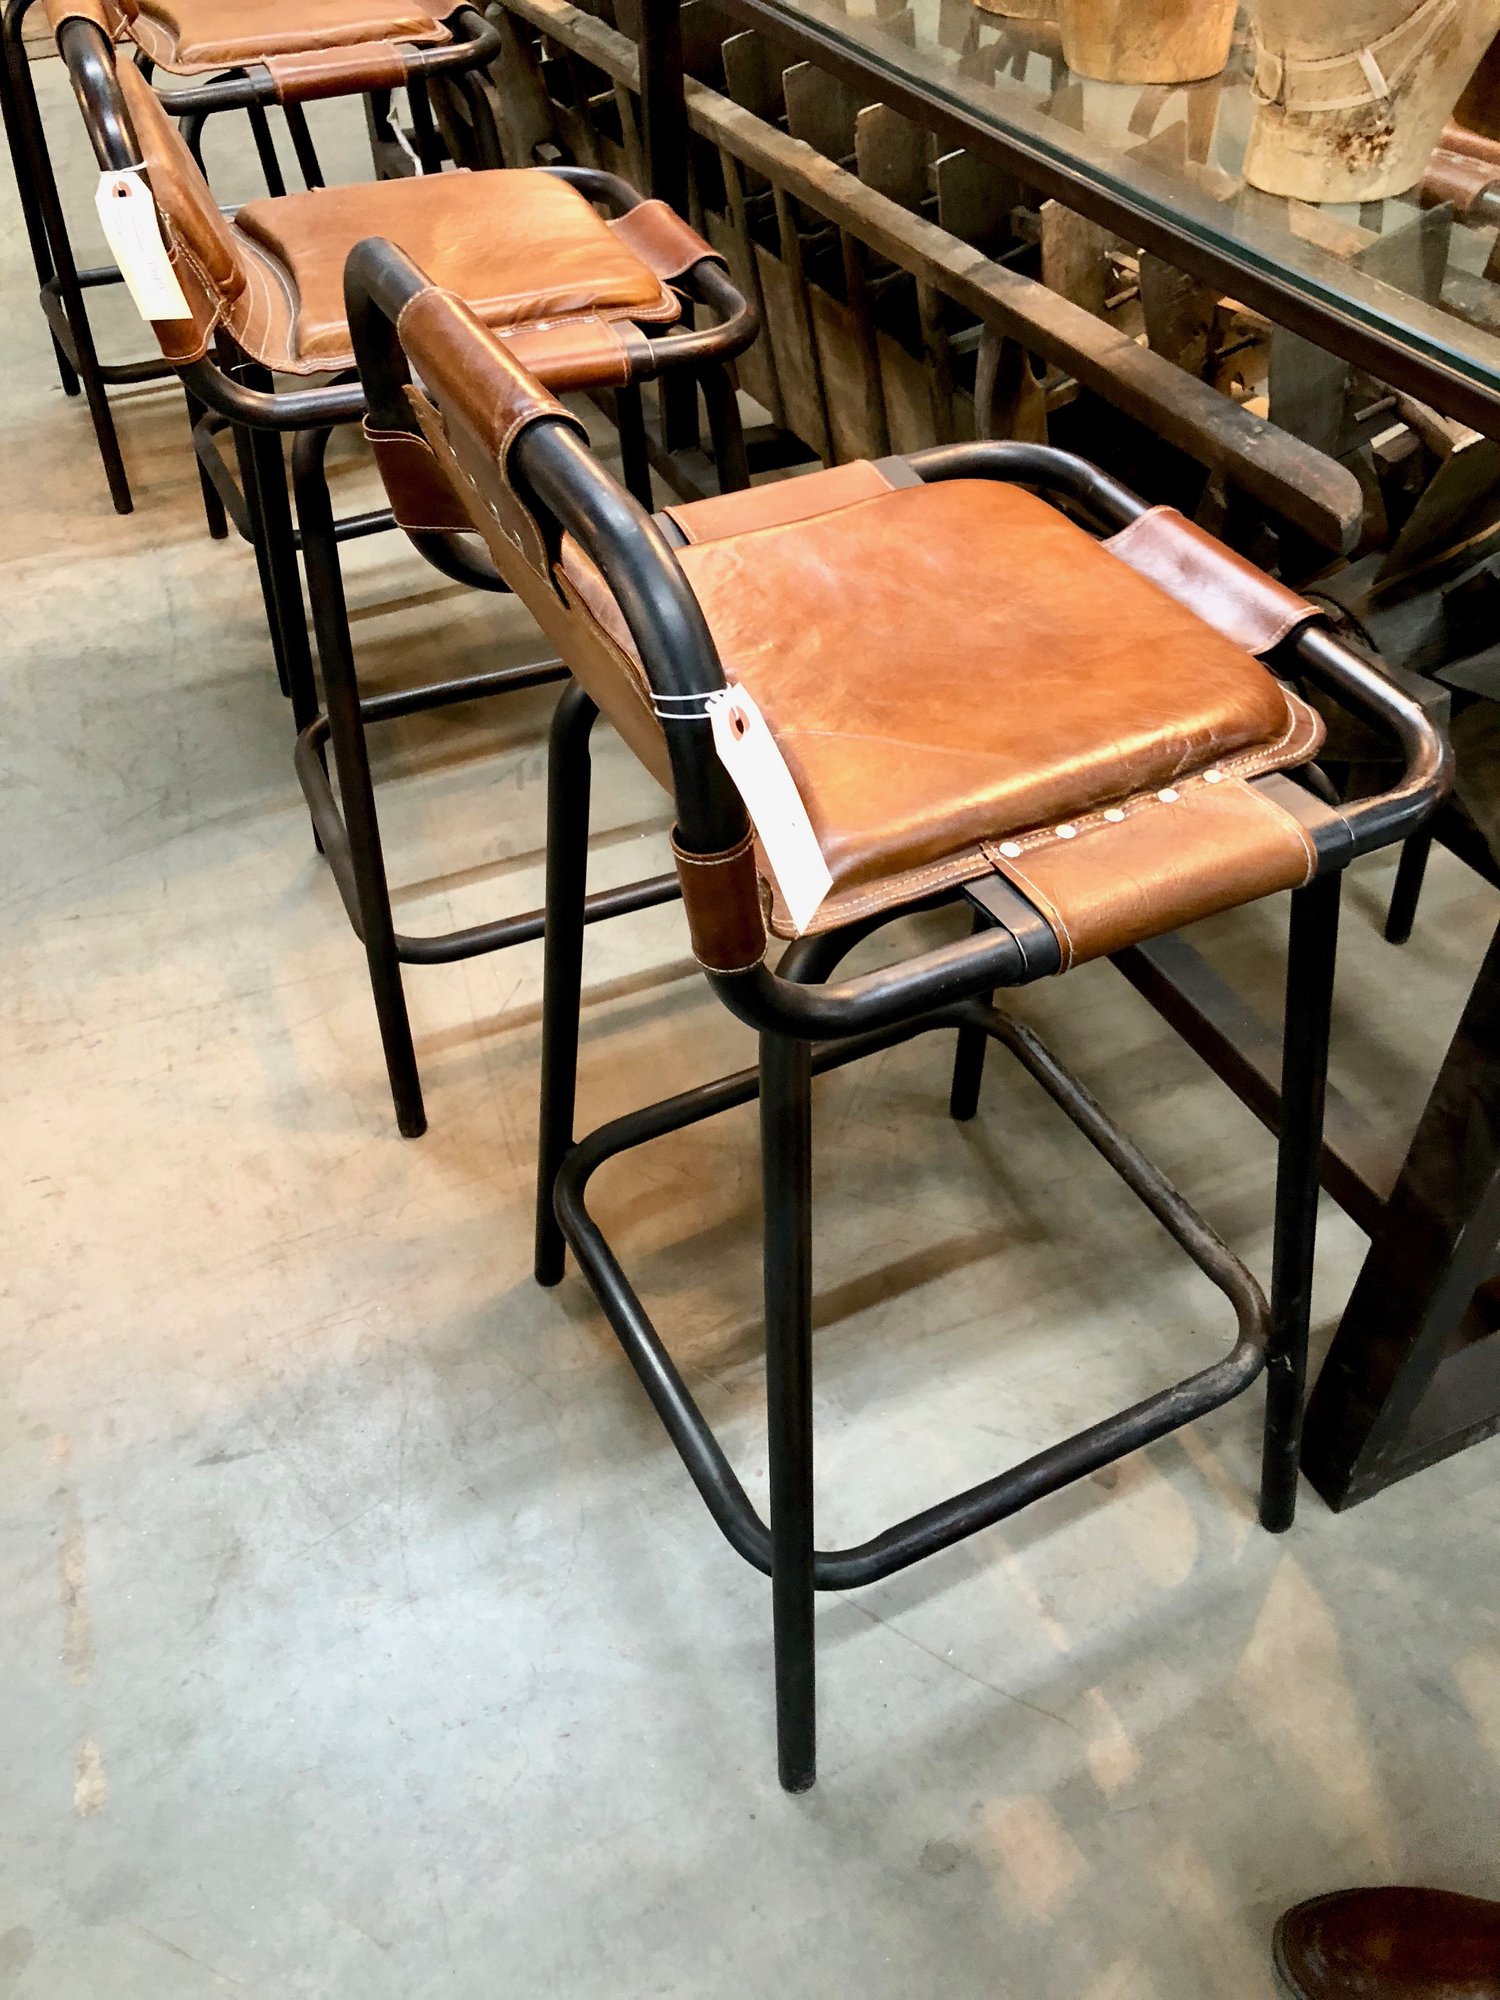  Vintage leather stools.&nbsp;&nbsp; 